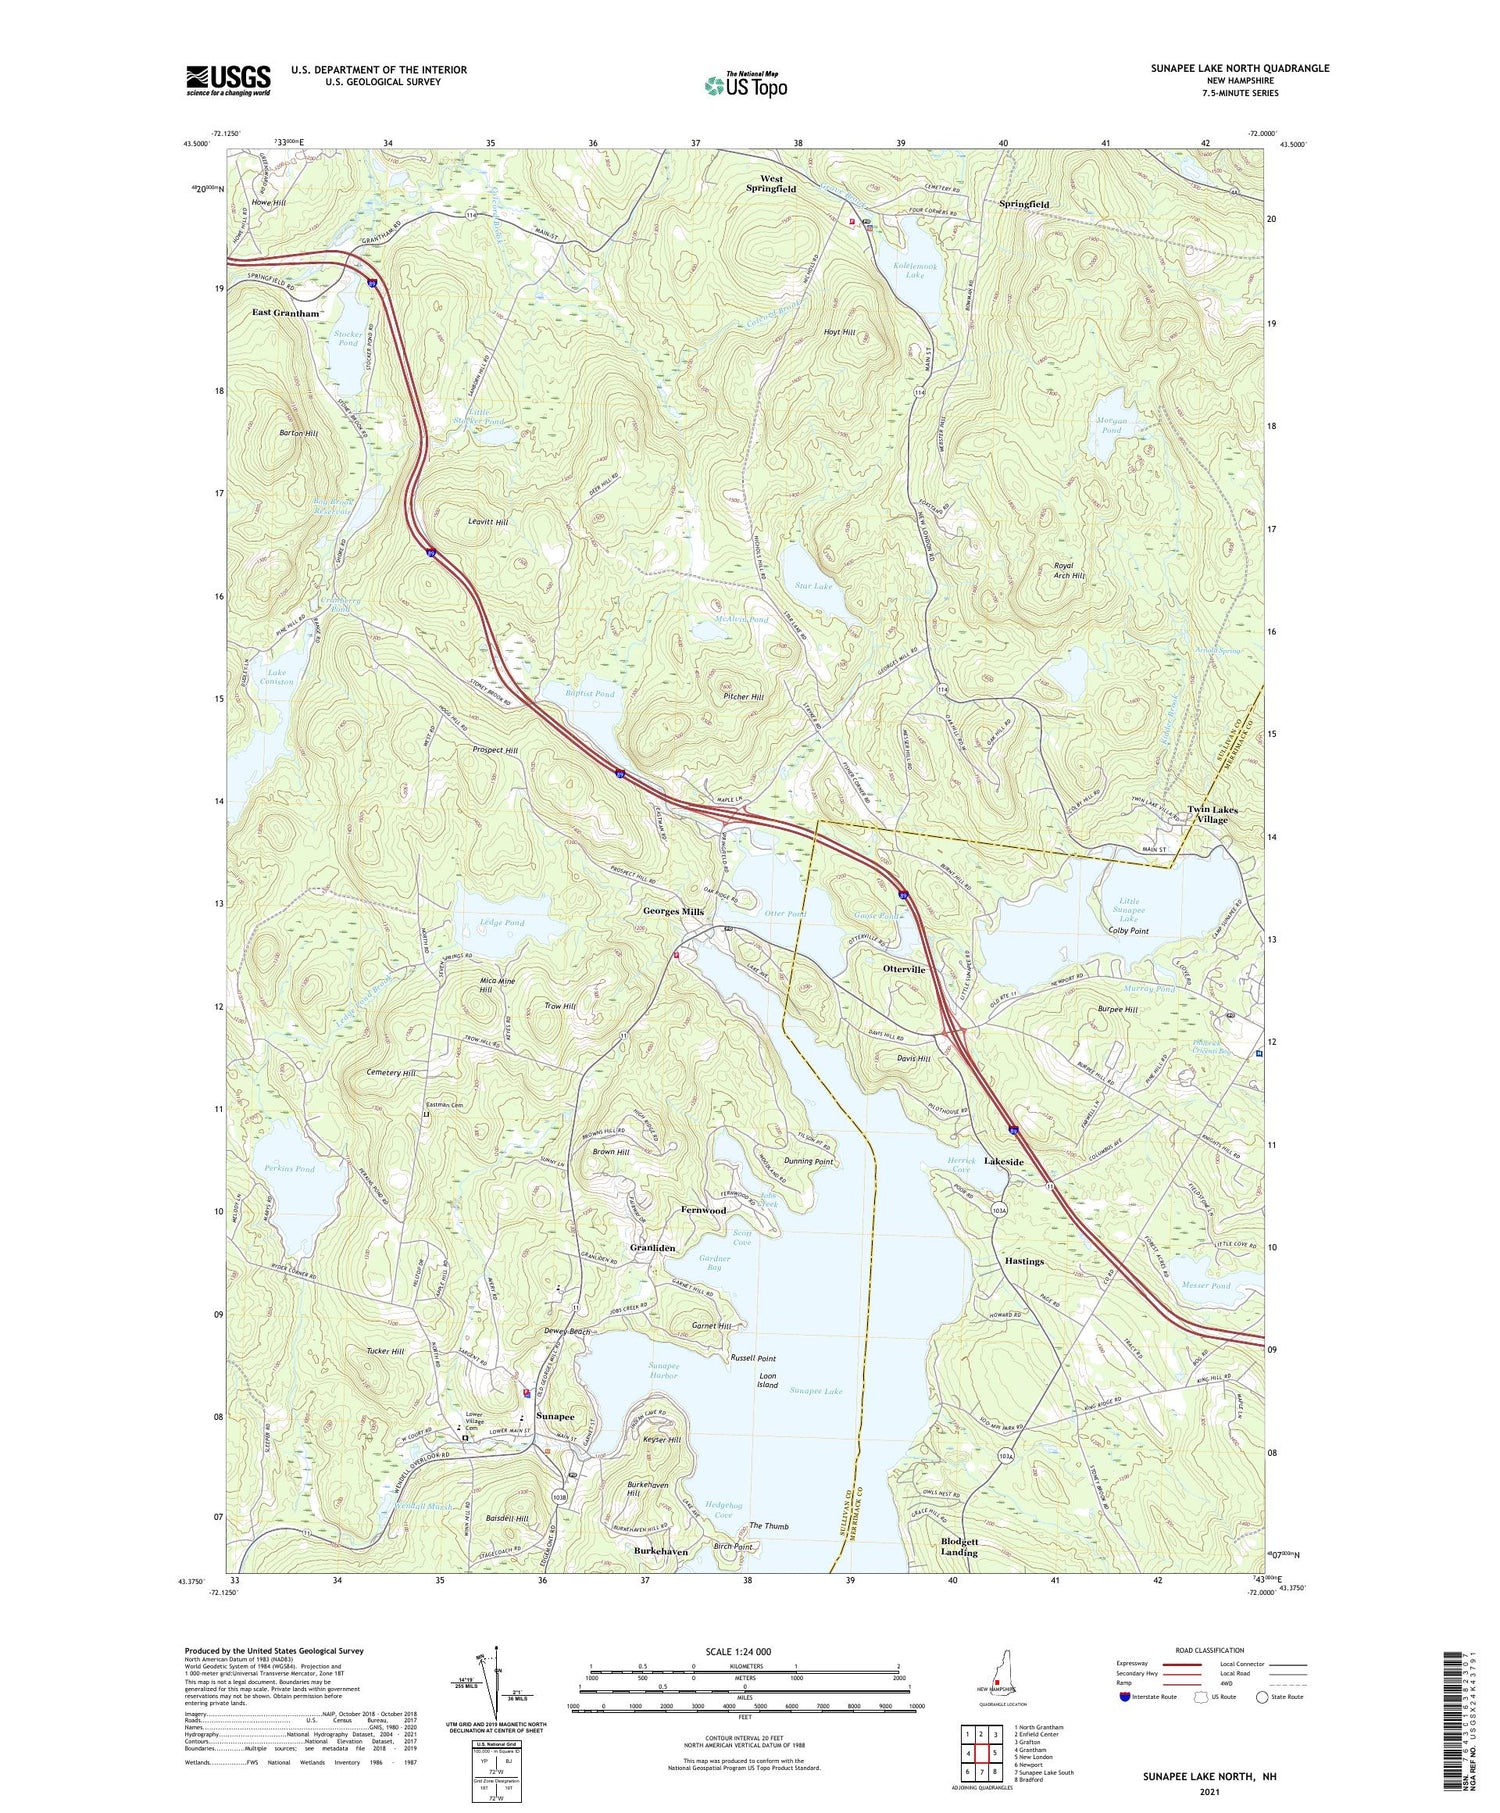 Sunapee Lake North New Hampshire US Topo Map Image